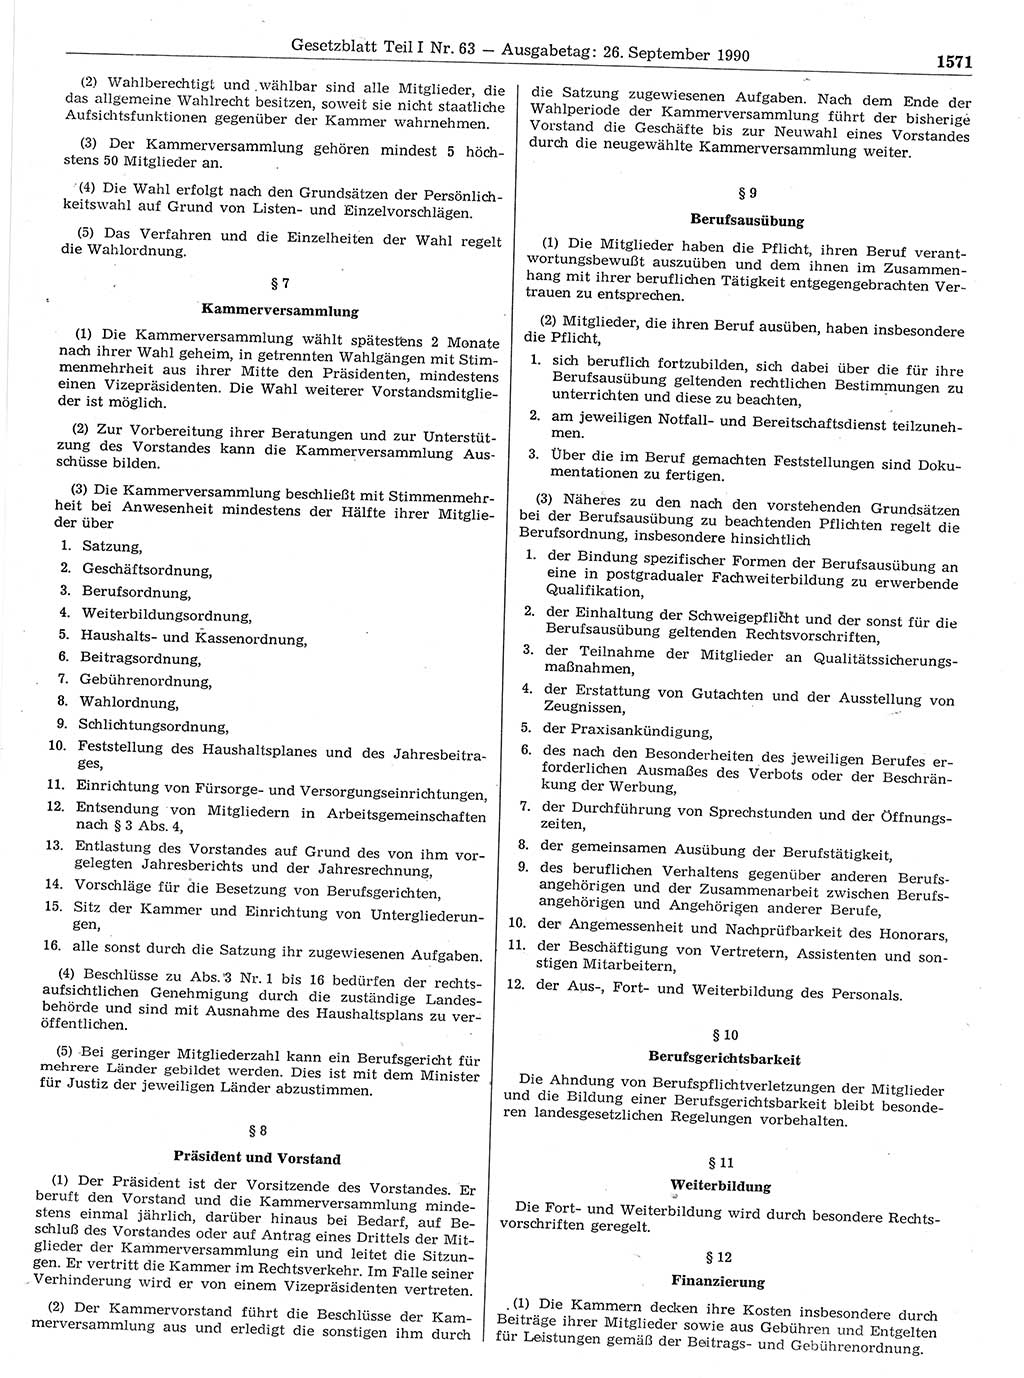 Gesetzblatt (GBl.) der Deutschen Demokratischen Republik (DDR) Teil Ⅰ 1990, Seite 1571 (GBl. DDR Ⅰ 1990, S. 1571)